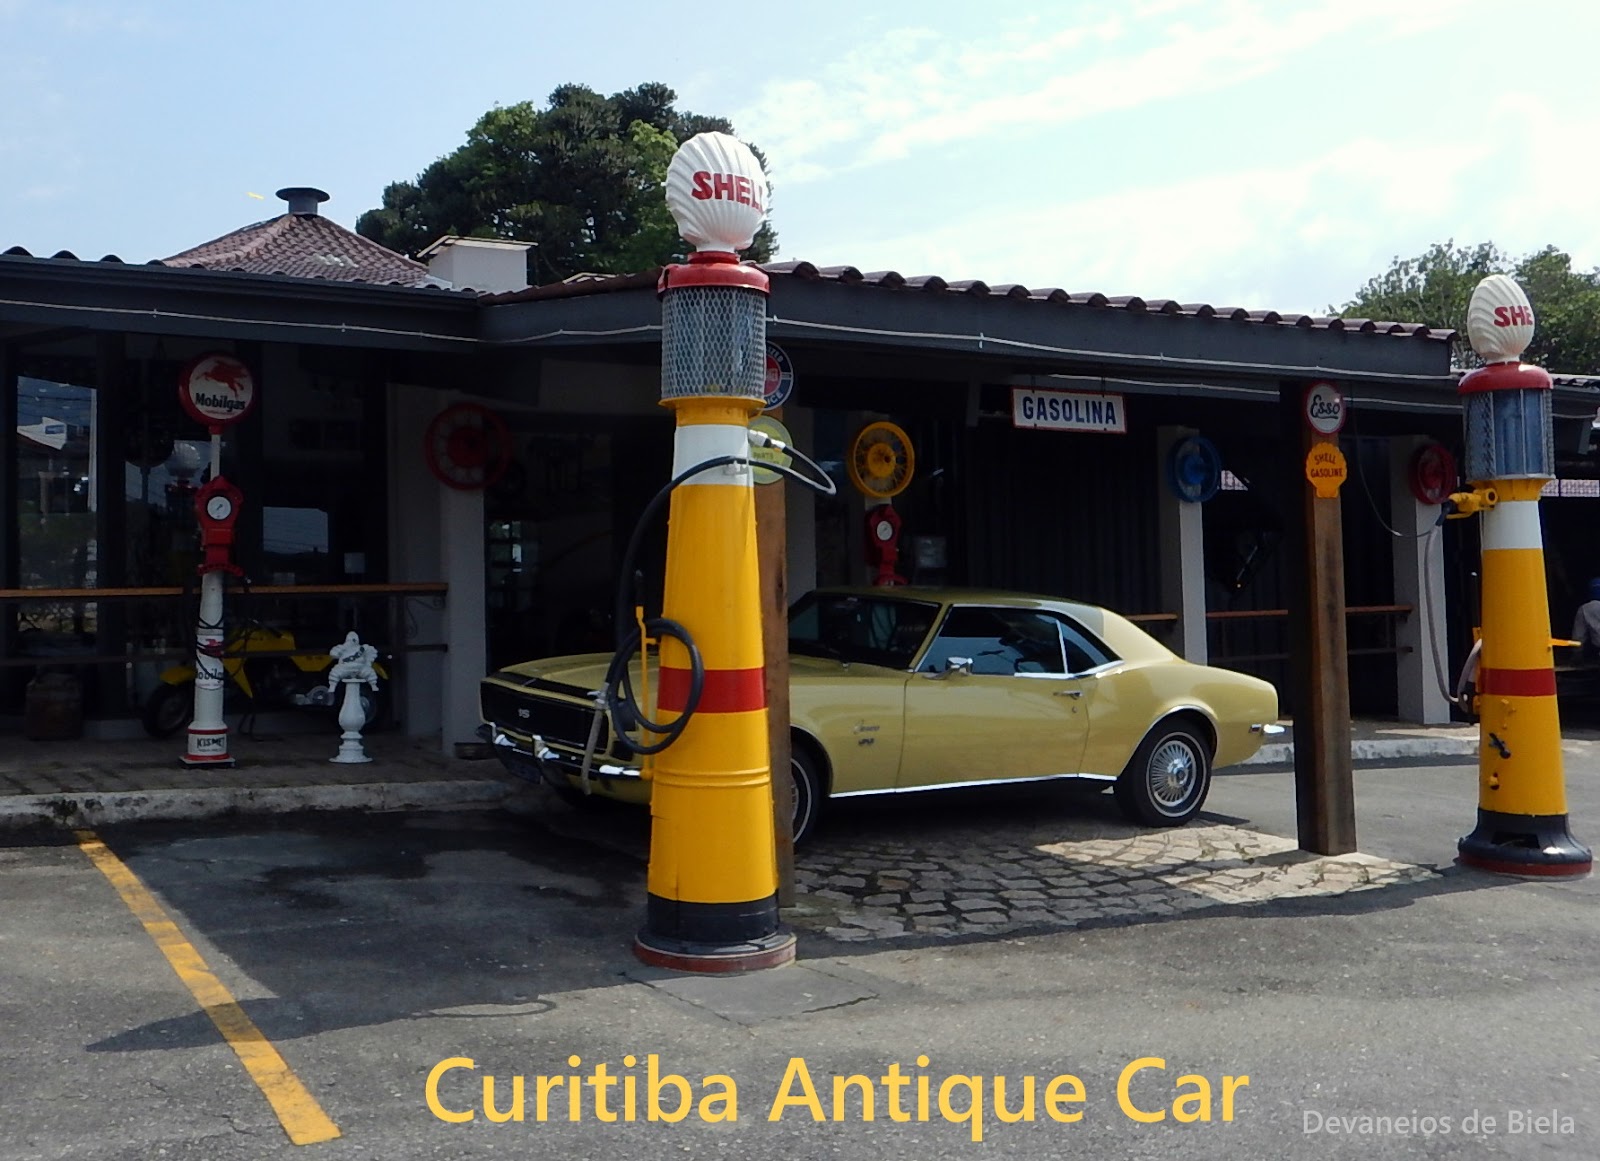 Bar temático todo feito com detalhes de carros, desde assentos, portas e  tudo mais. - Picture of Curitiba Antique Car - Tripadvisor